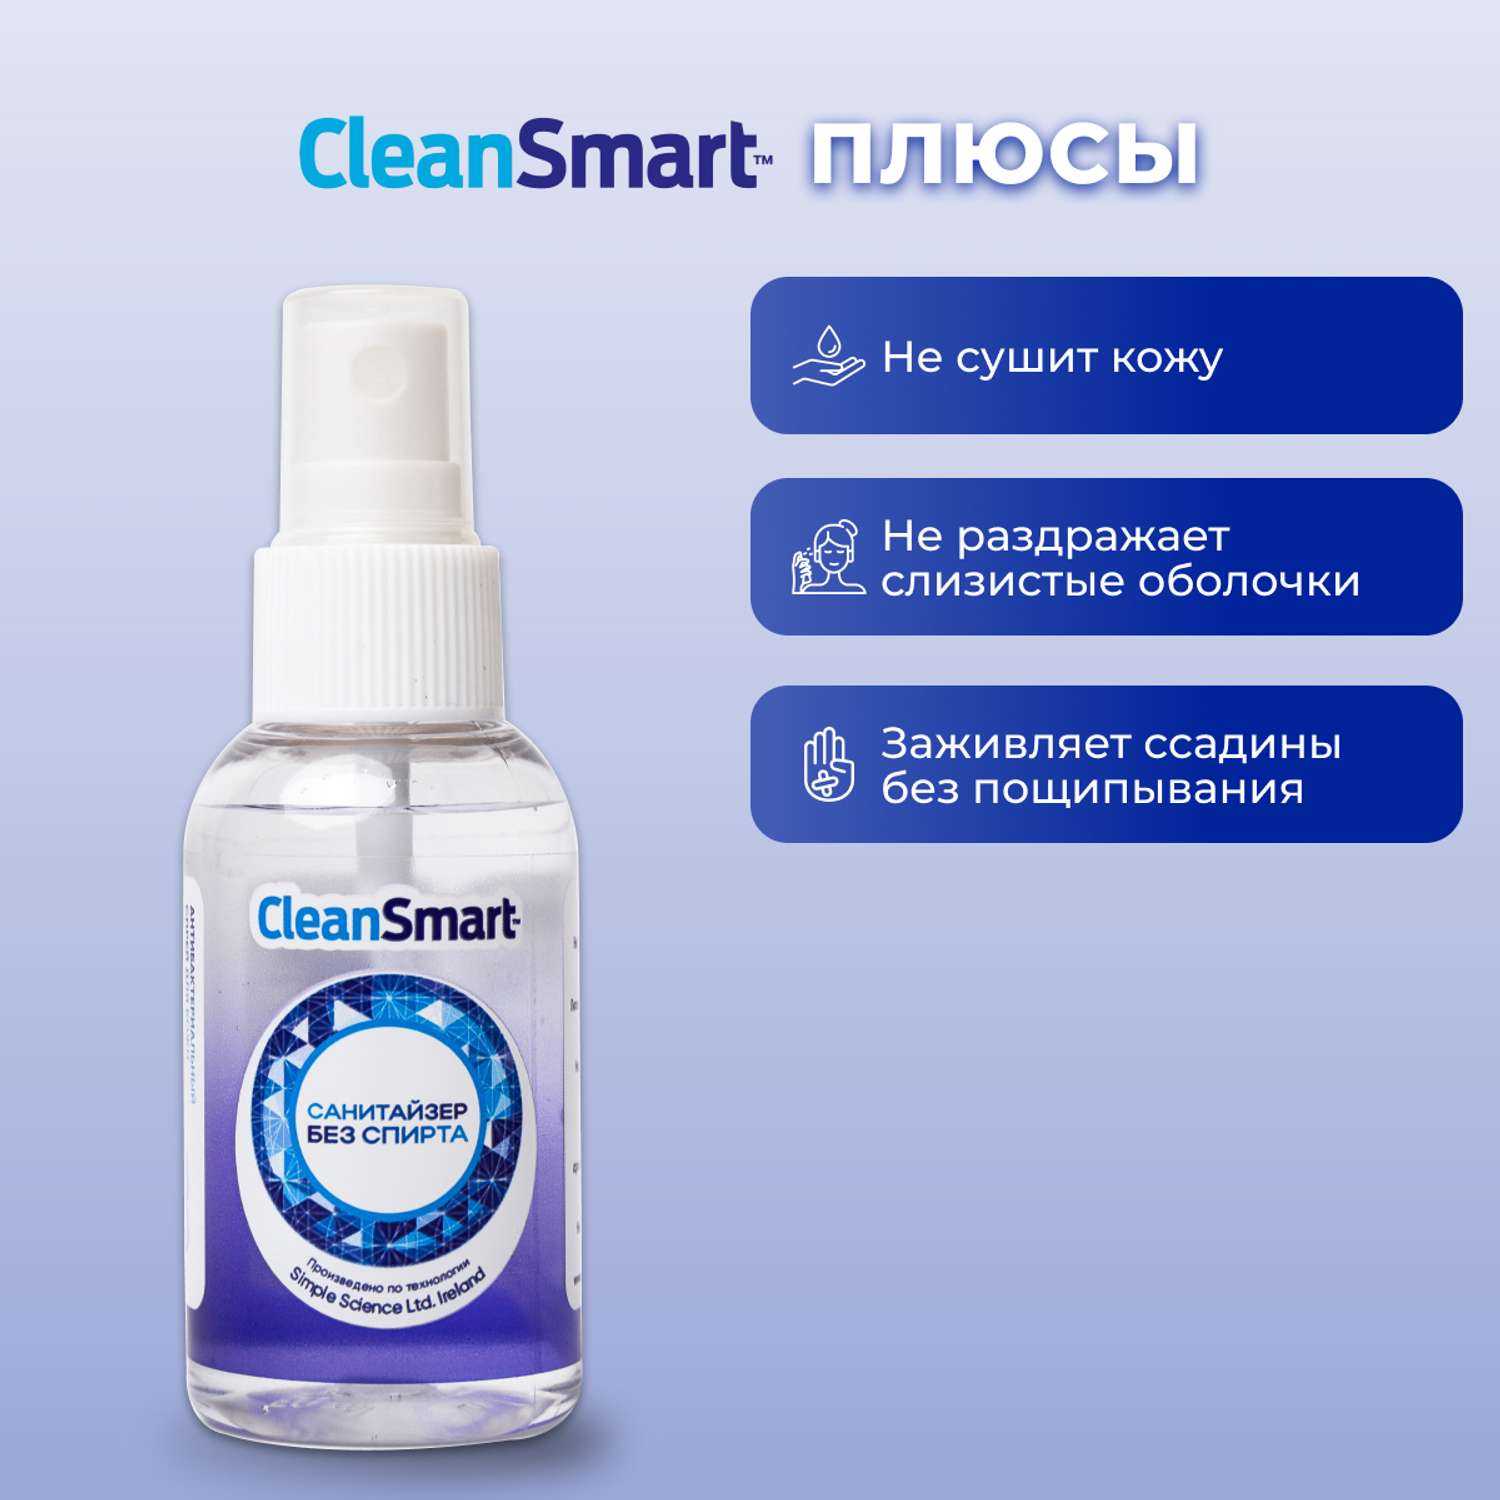 Антибактериальный спрей CleanSmart Антисептик для рук и поверхностей санитайзер для всей семьи 50 мл - фото 4